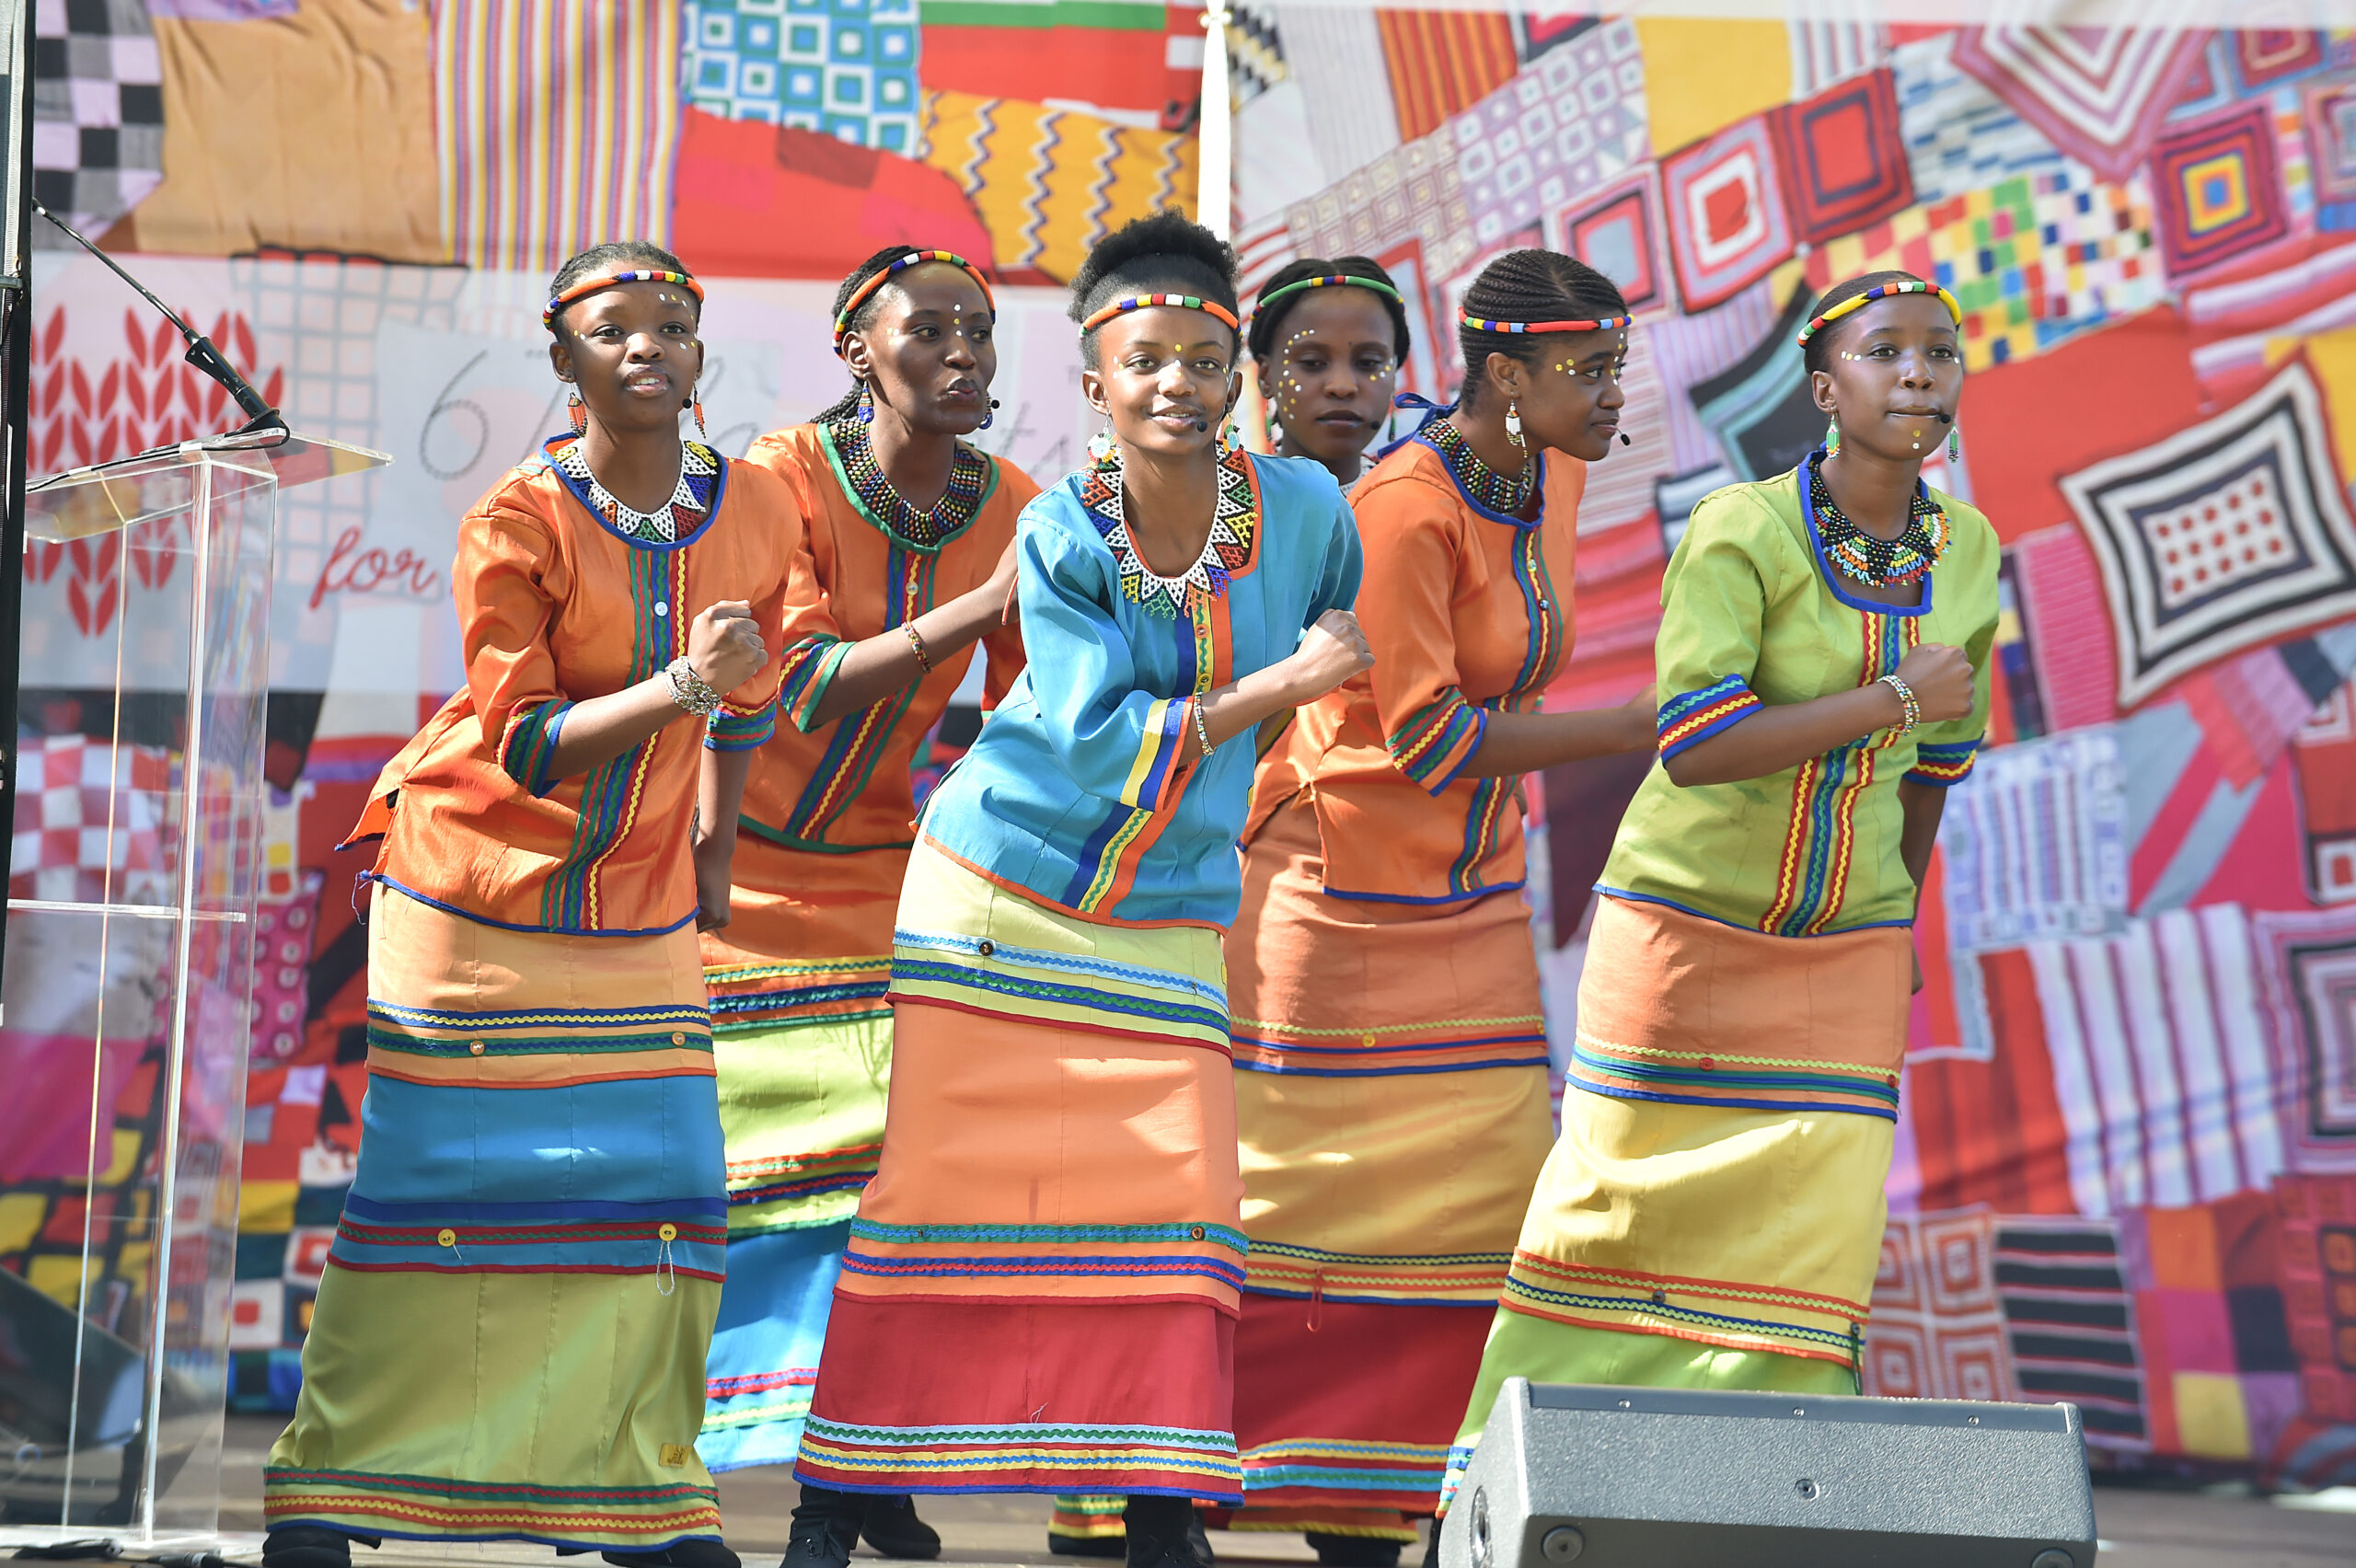 Mzansi Youth choir